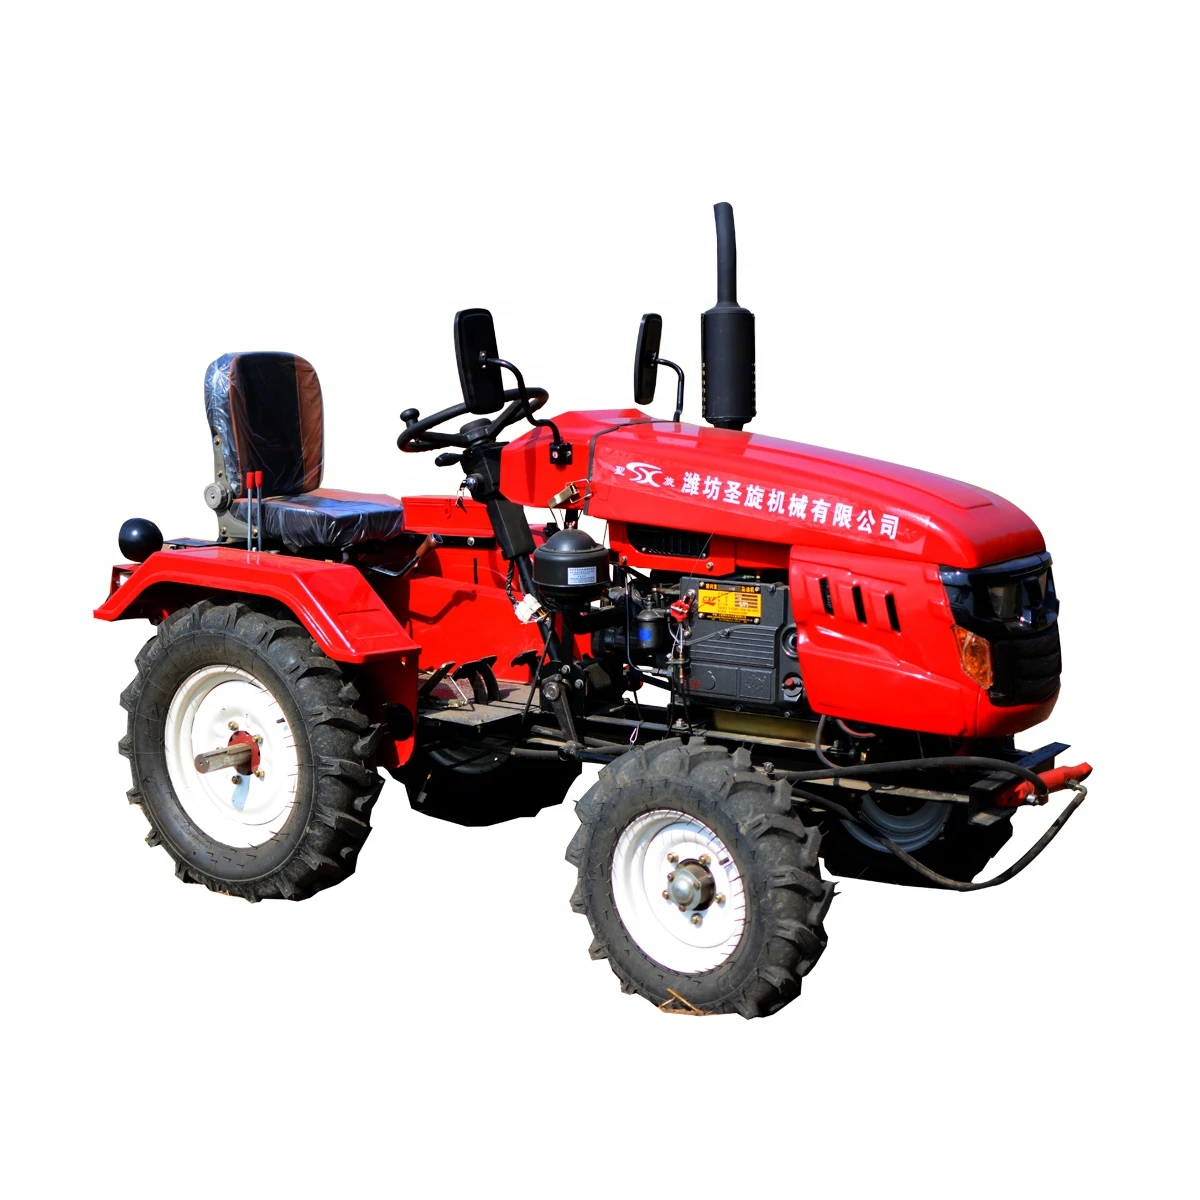 Mini farm machinery equipment agricultural